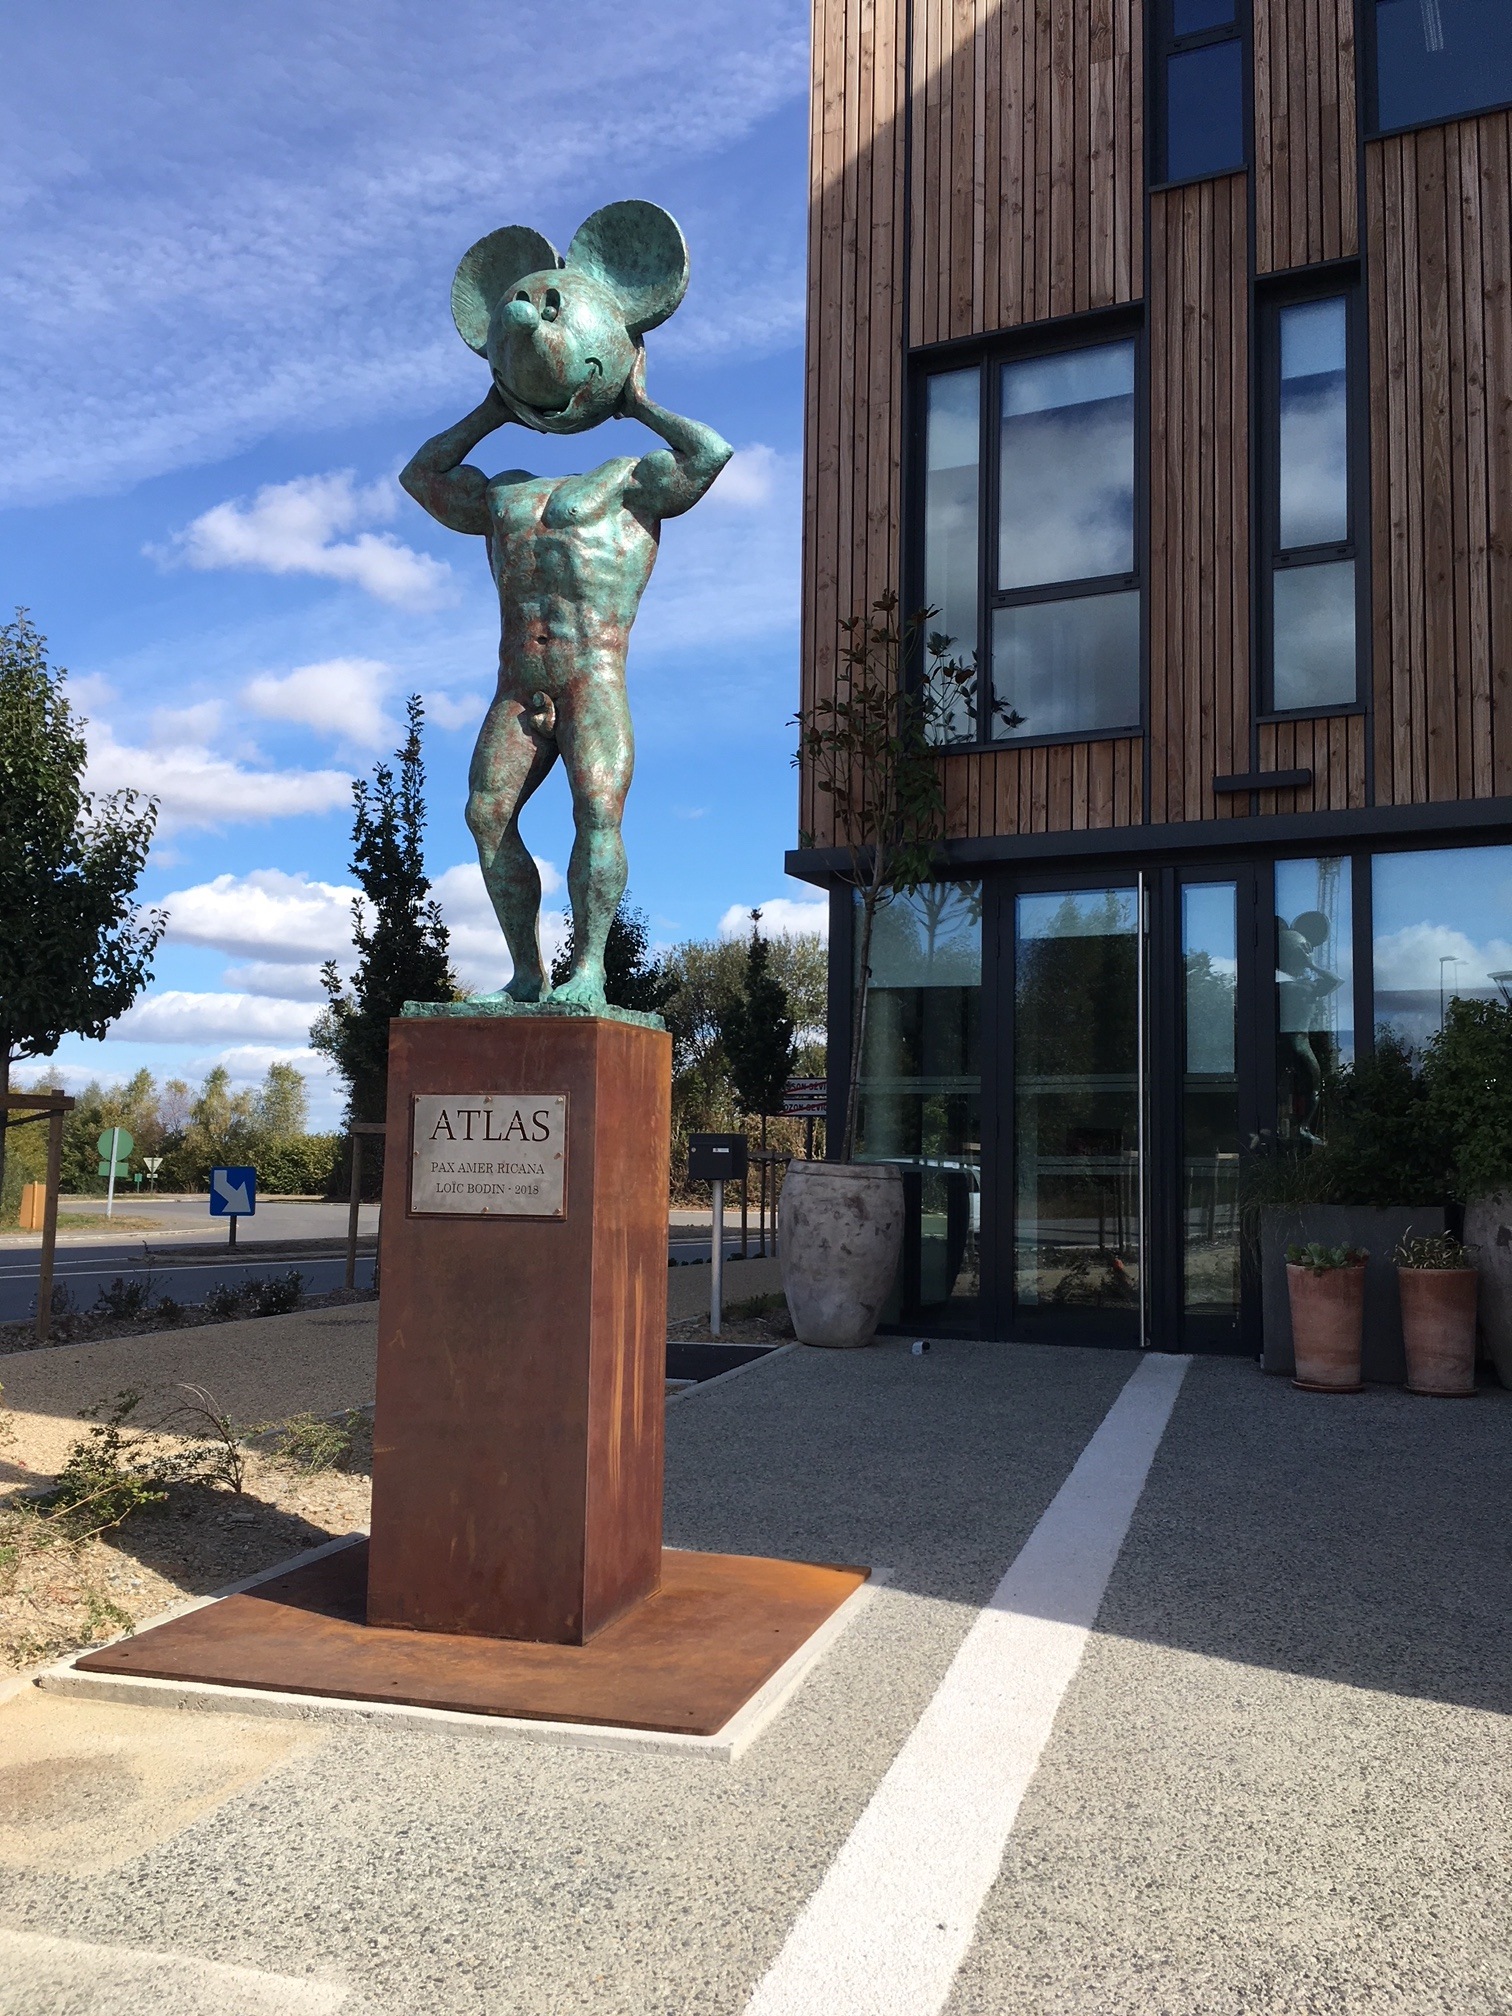 Loïc Bodin, ATLAS Pax amer ricana, sculpture en bronze, installée devant le siège de Net Plus, 2018